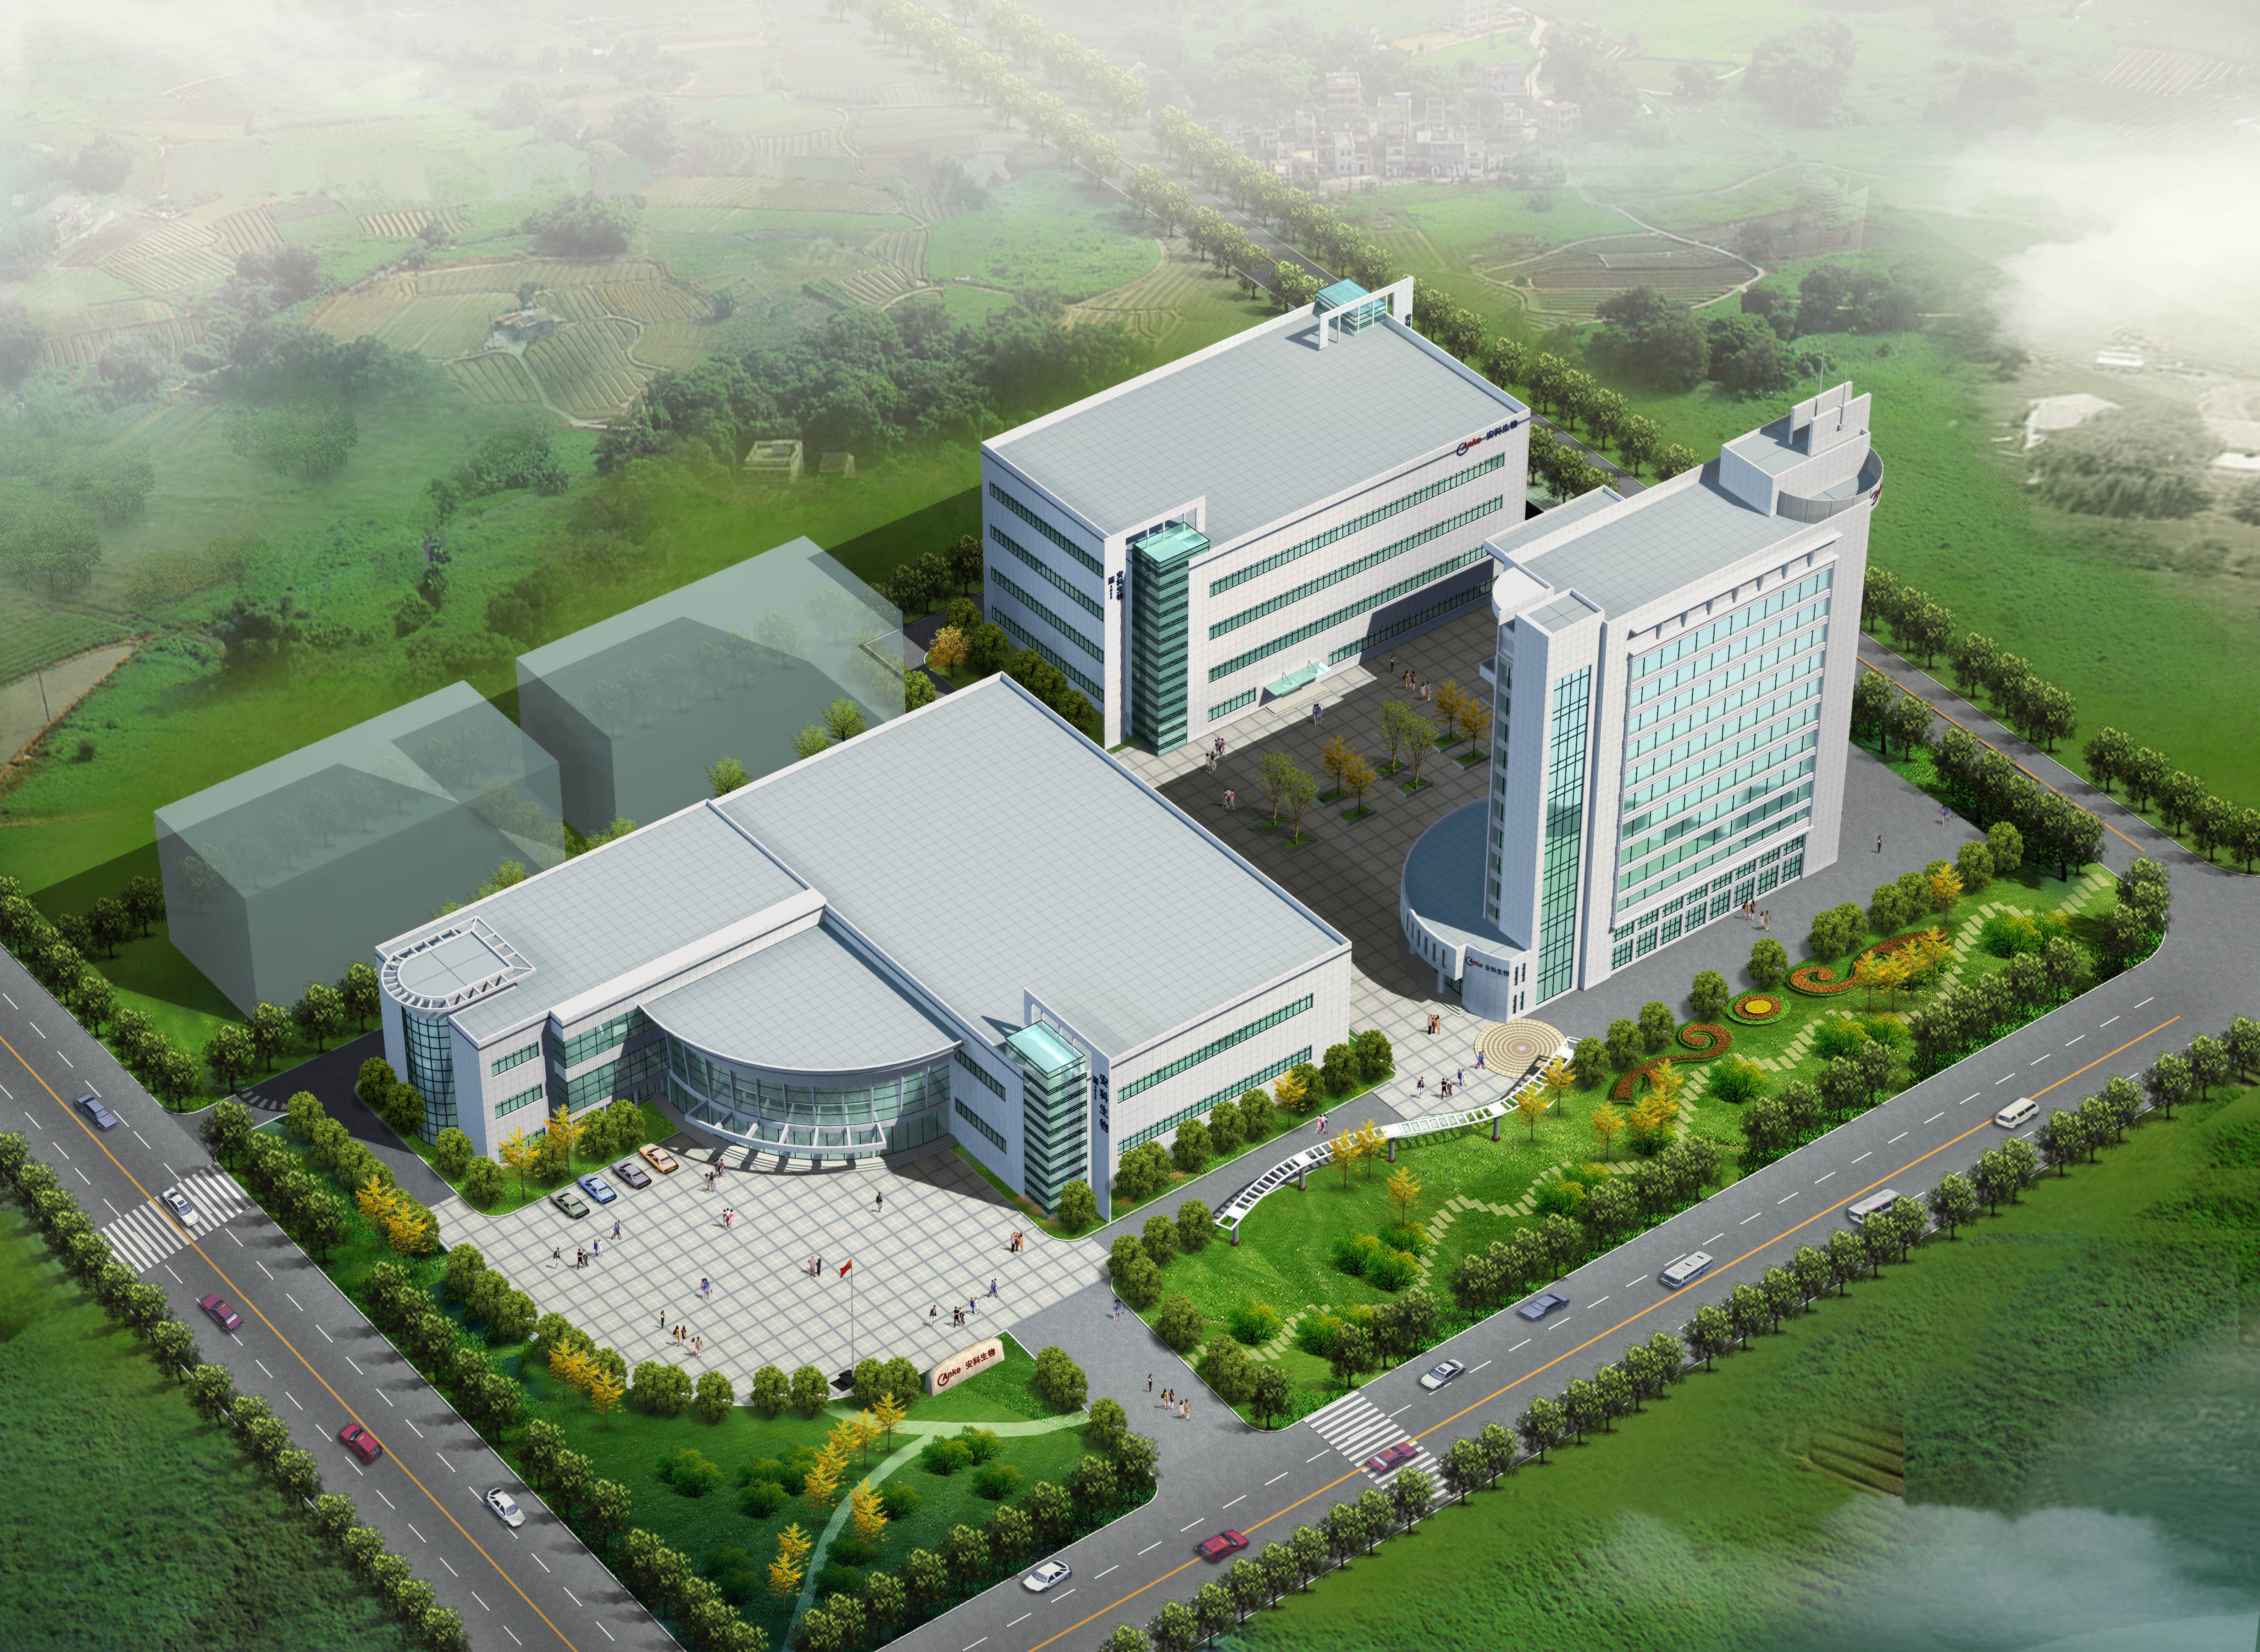 安科生物新医药研发中心及募投资金产业化项目工程进展顺利